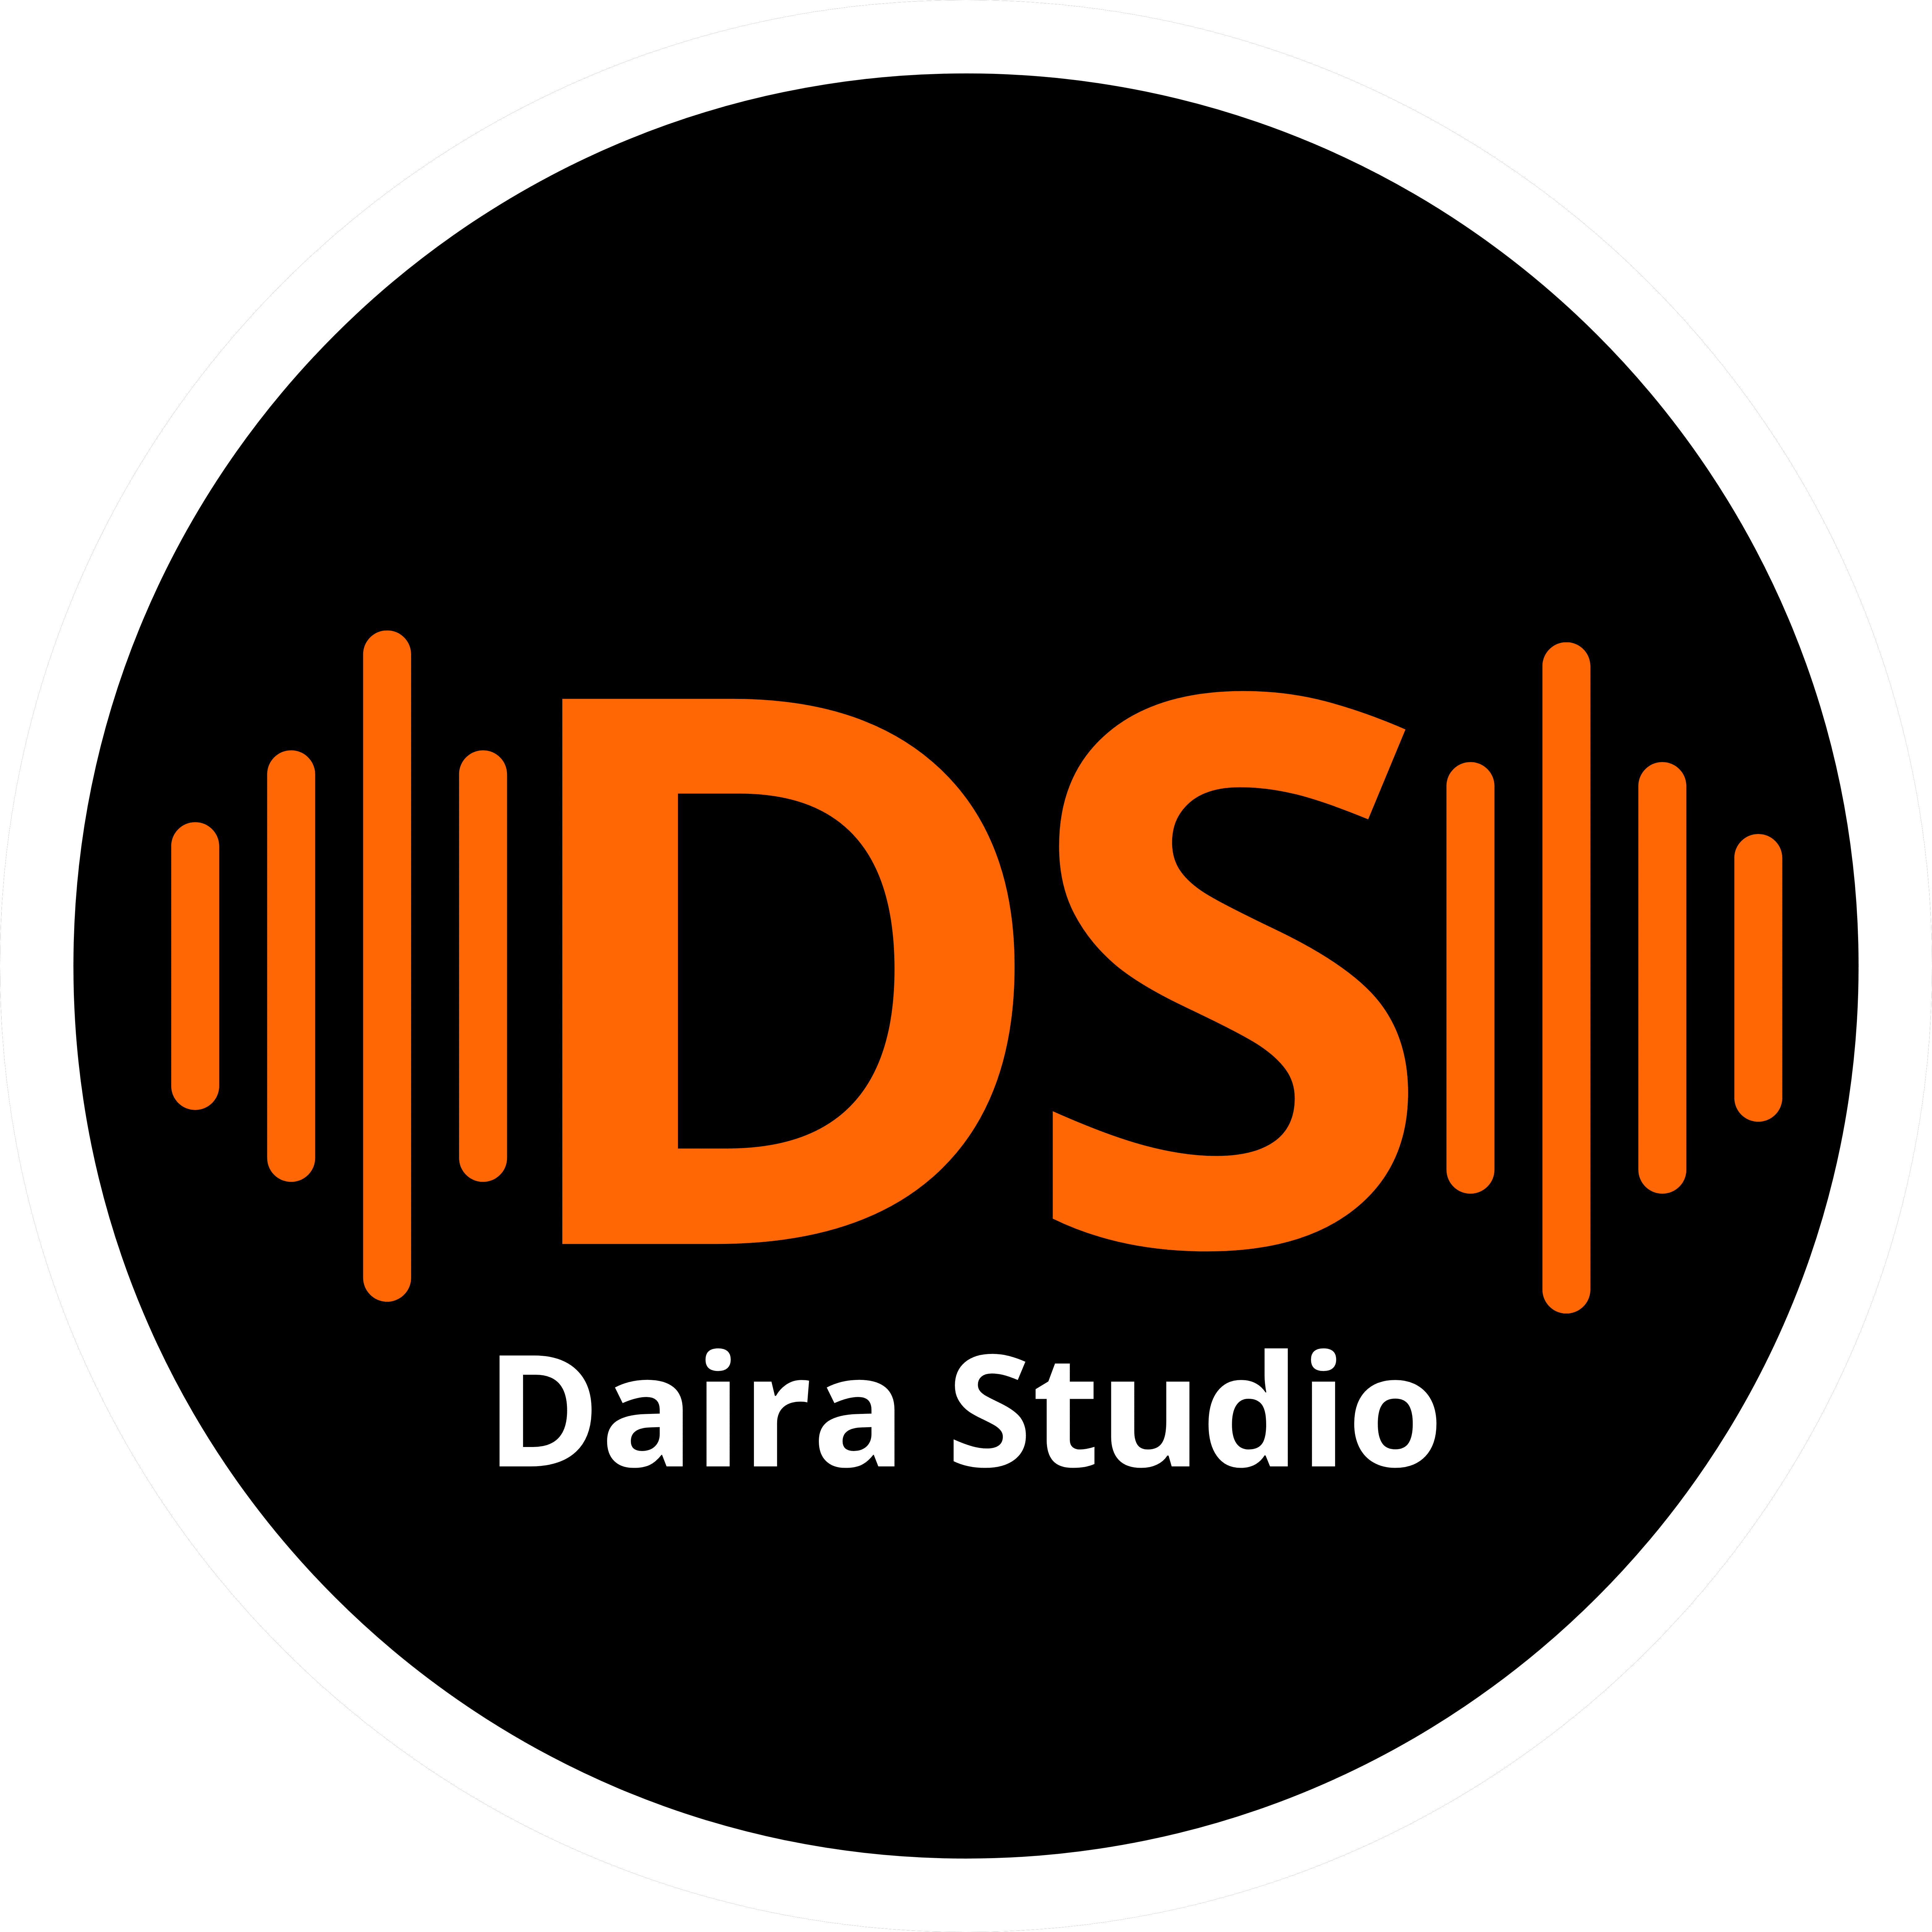 Daira Studio